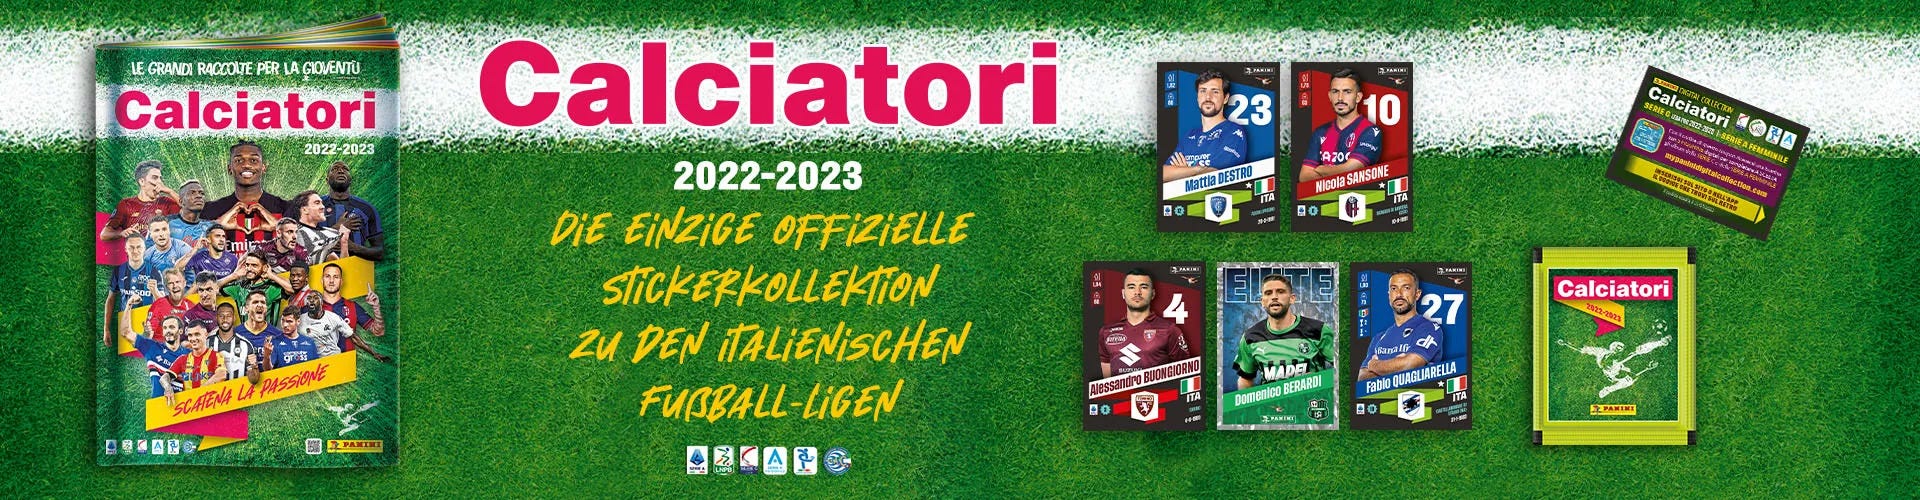 Calciatori 2022/ 2023 - Die besten Fußballer der Italienischen Serie A, B und C